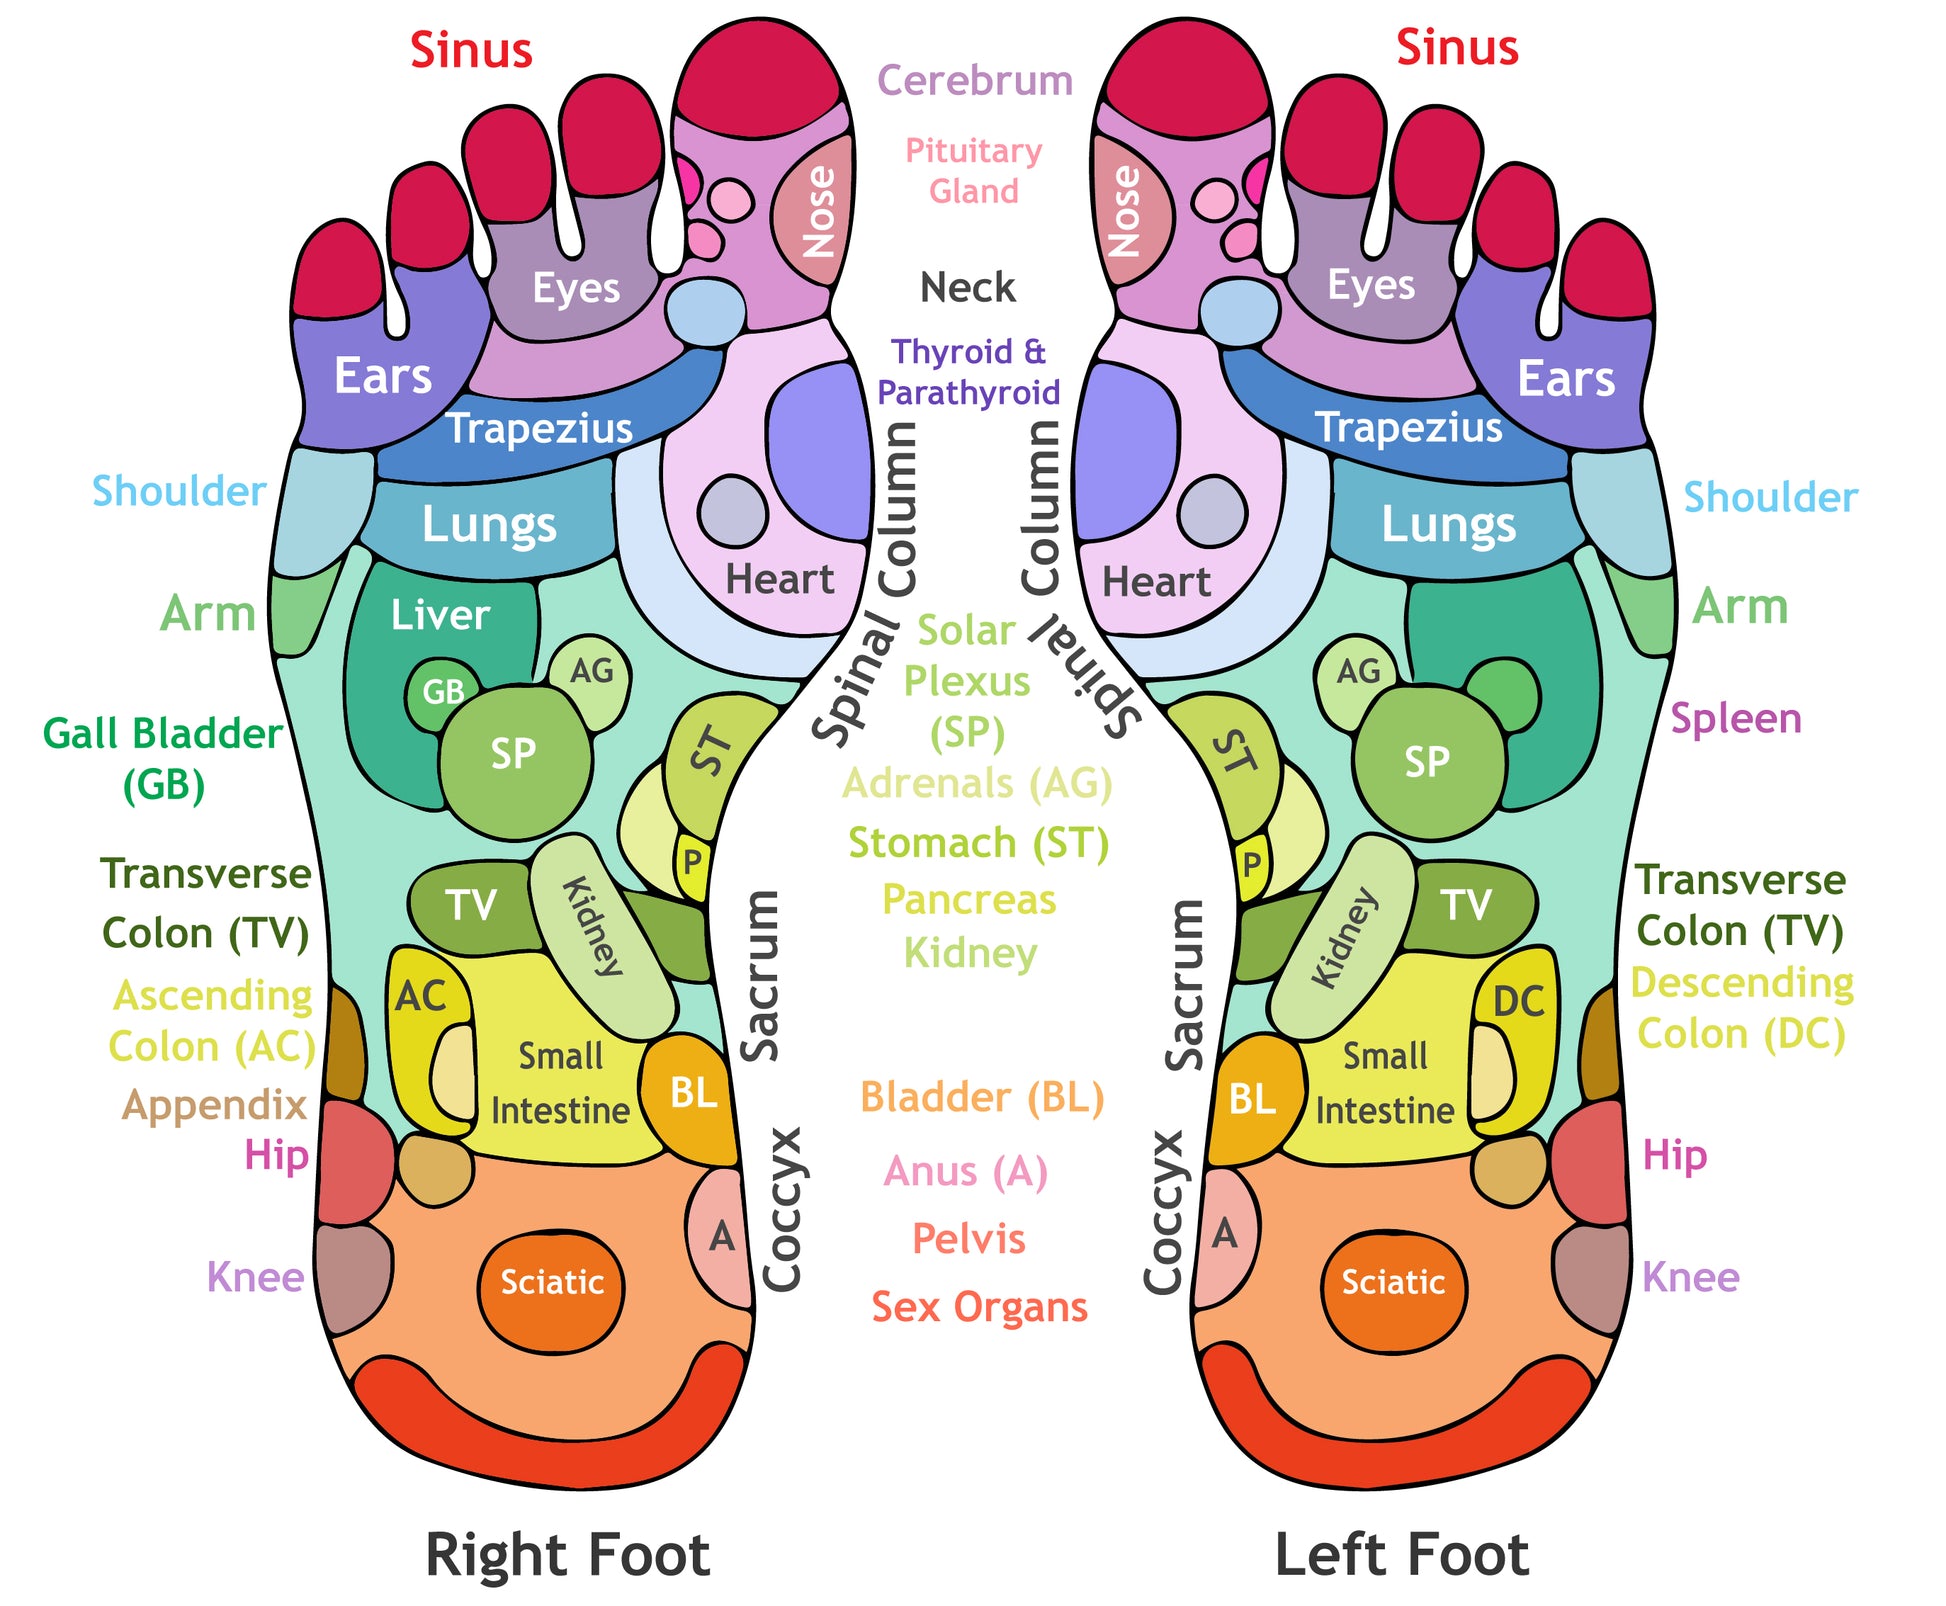 Centerworks Acupressure Foot Massage Mat – Centerworks® Online